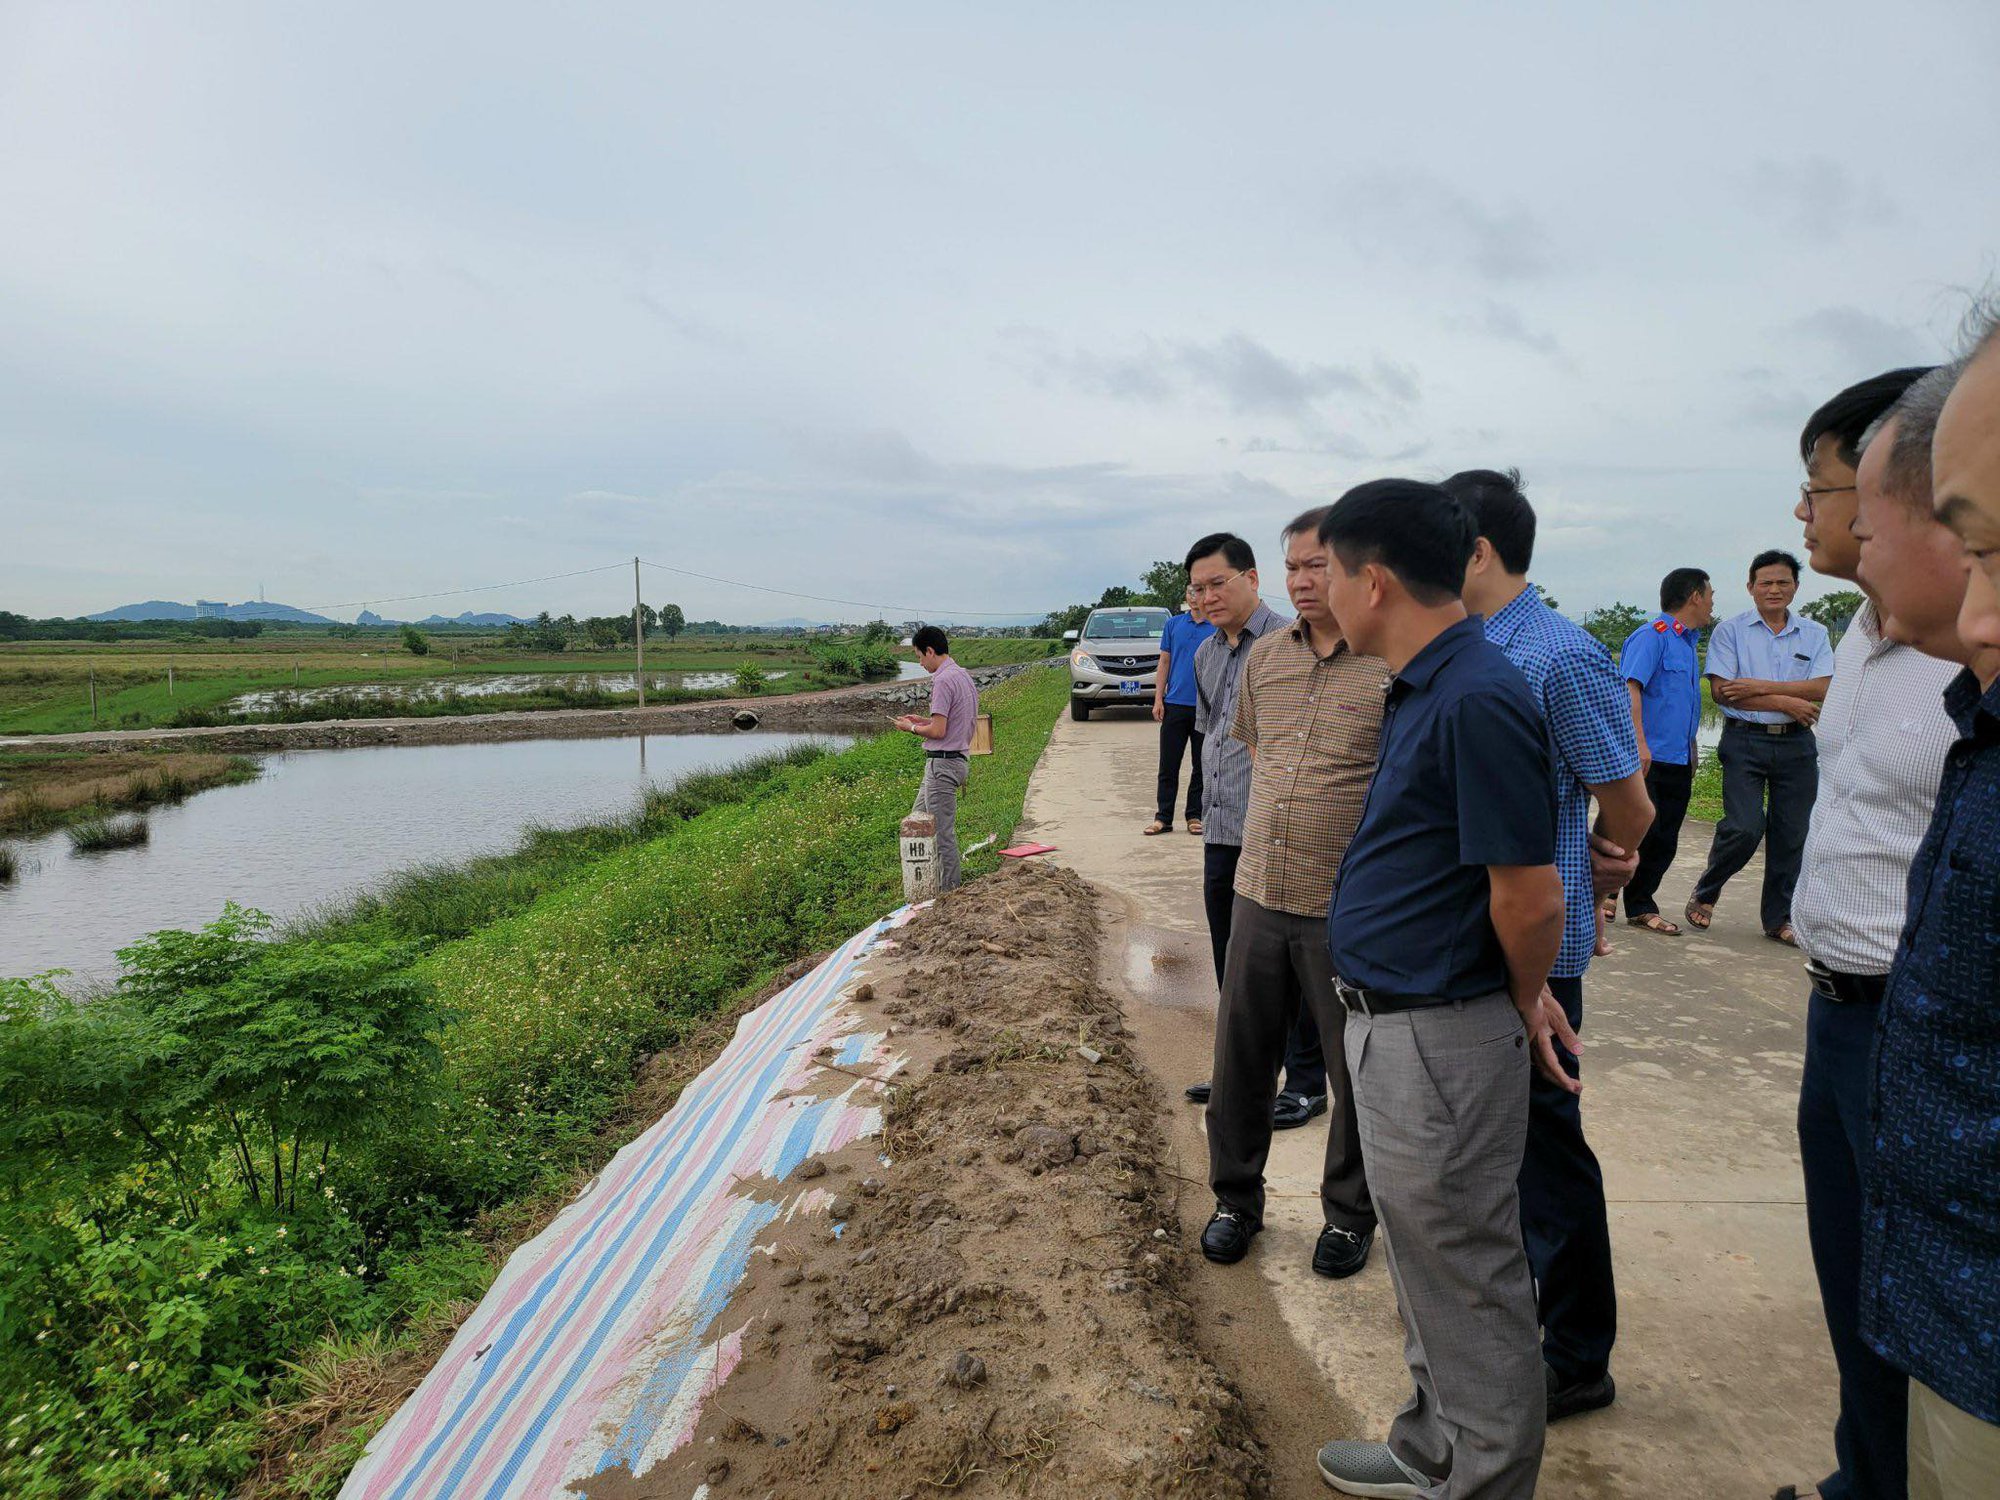 Đê tả sông Mã sụt lún dài 1km, đe dọa hơn 29.000 dân, Thanh Hóa được khuyến cáo ban bố tình trạng khẩn cấp - Ảnh 2.